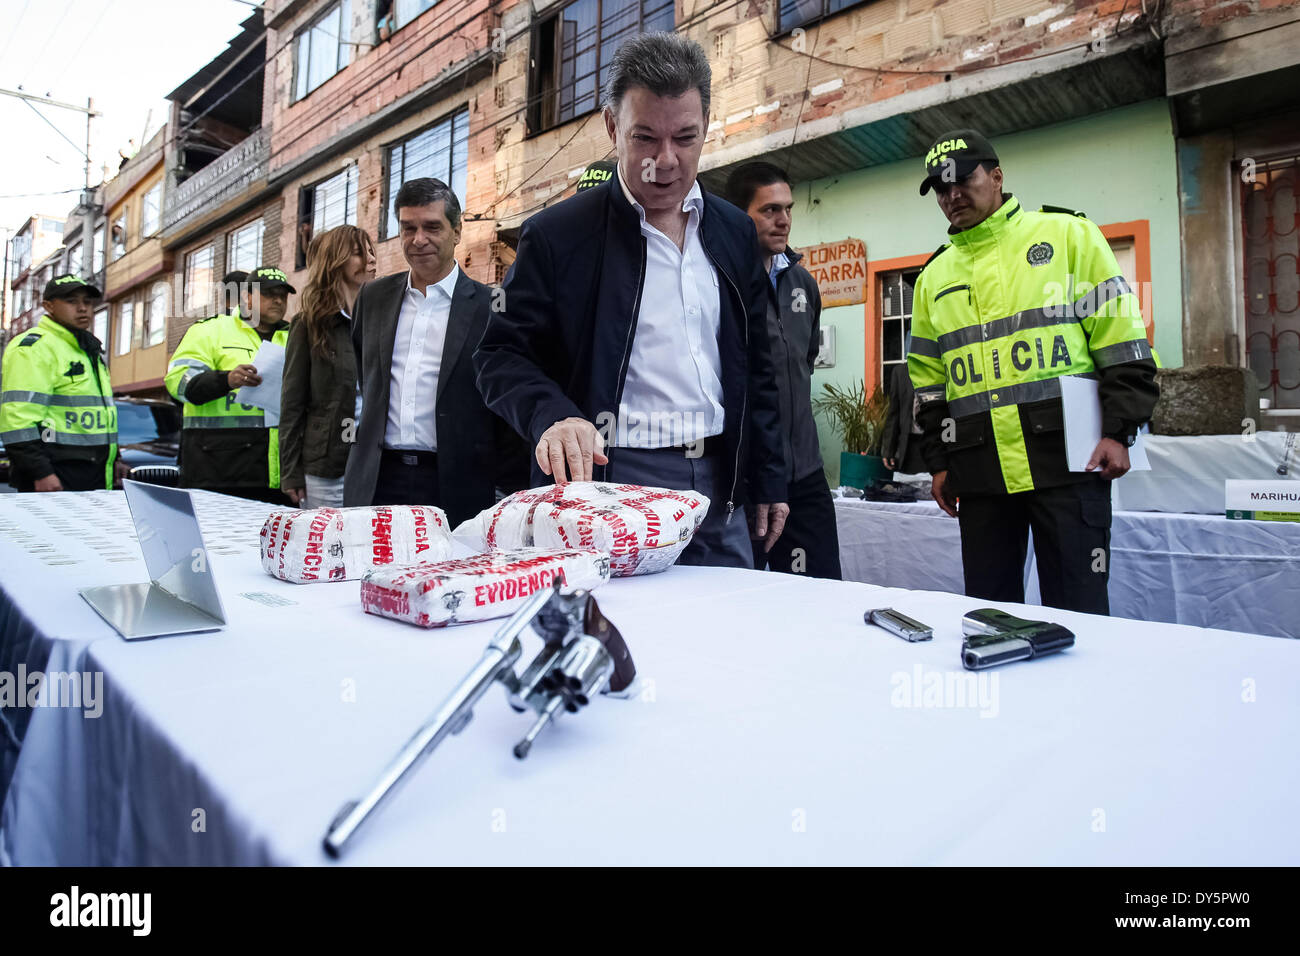 Bogota, Colombie. Apr 11, 2014. Le président colombien Juan Manuel Santos (C), les montres une saisie de cocaïne au cours d'une opération contre l'appelé 'Pots' à Bogota, capitale de la Colombie, le 11 avril 2014. Santos a lancé jeudi un nouveau plan de lutte contre l'microtraffic de démolir les structures dans ceux qui appliquent le 'pot' de drogues illicites et d'armes, selon la presse locale. Credit : Jhon Paz/Xinhua/Alamy Live News Banque D'Images